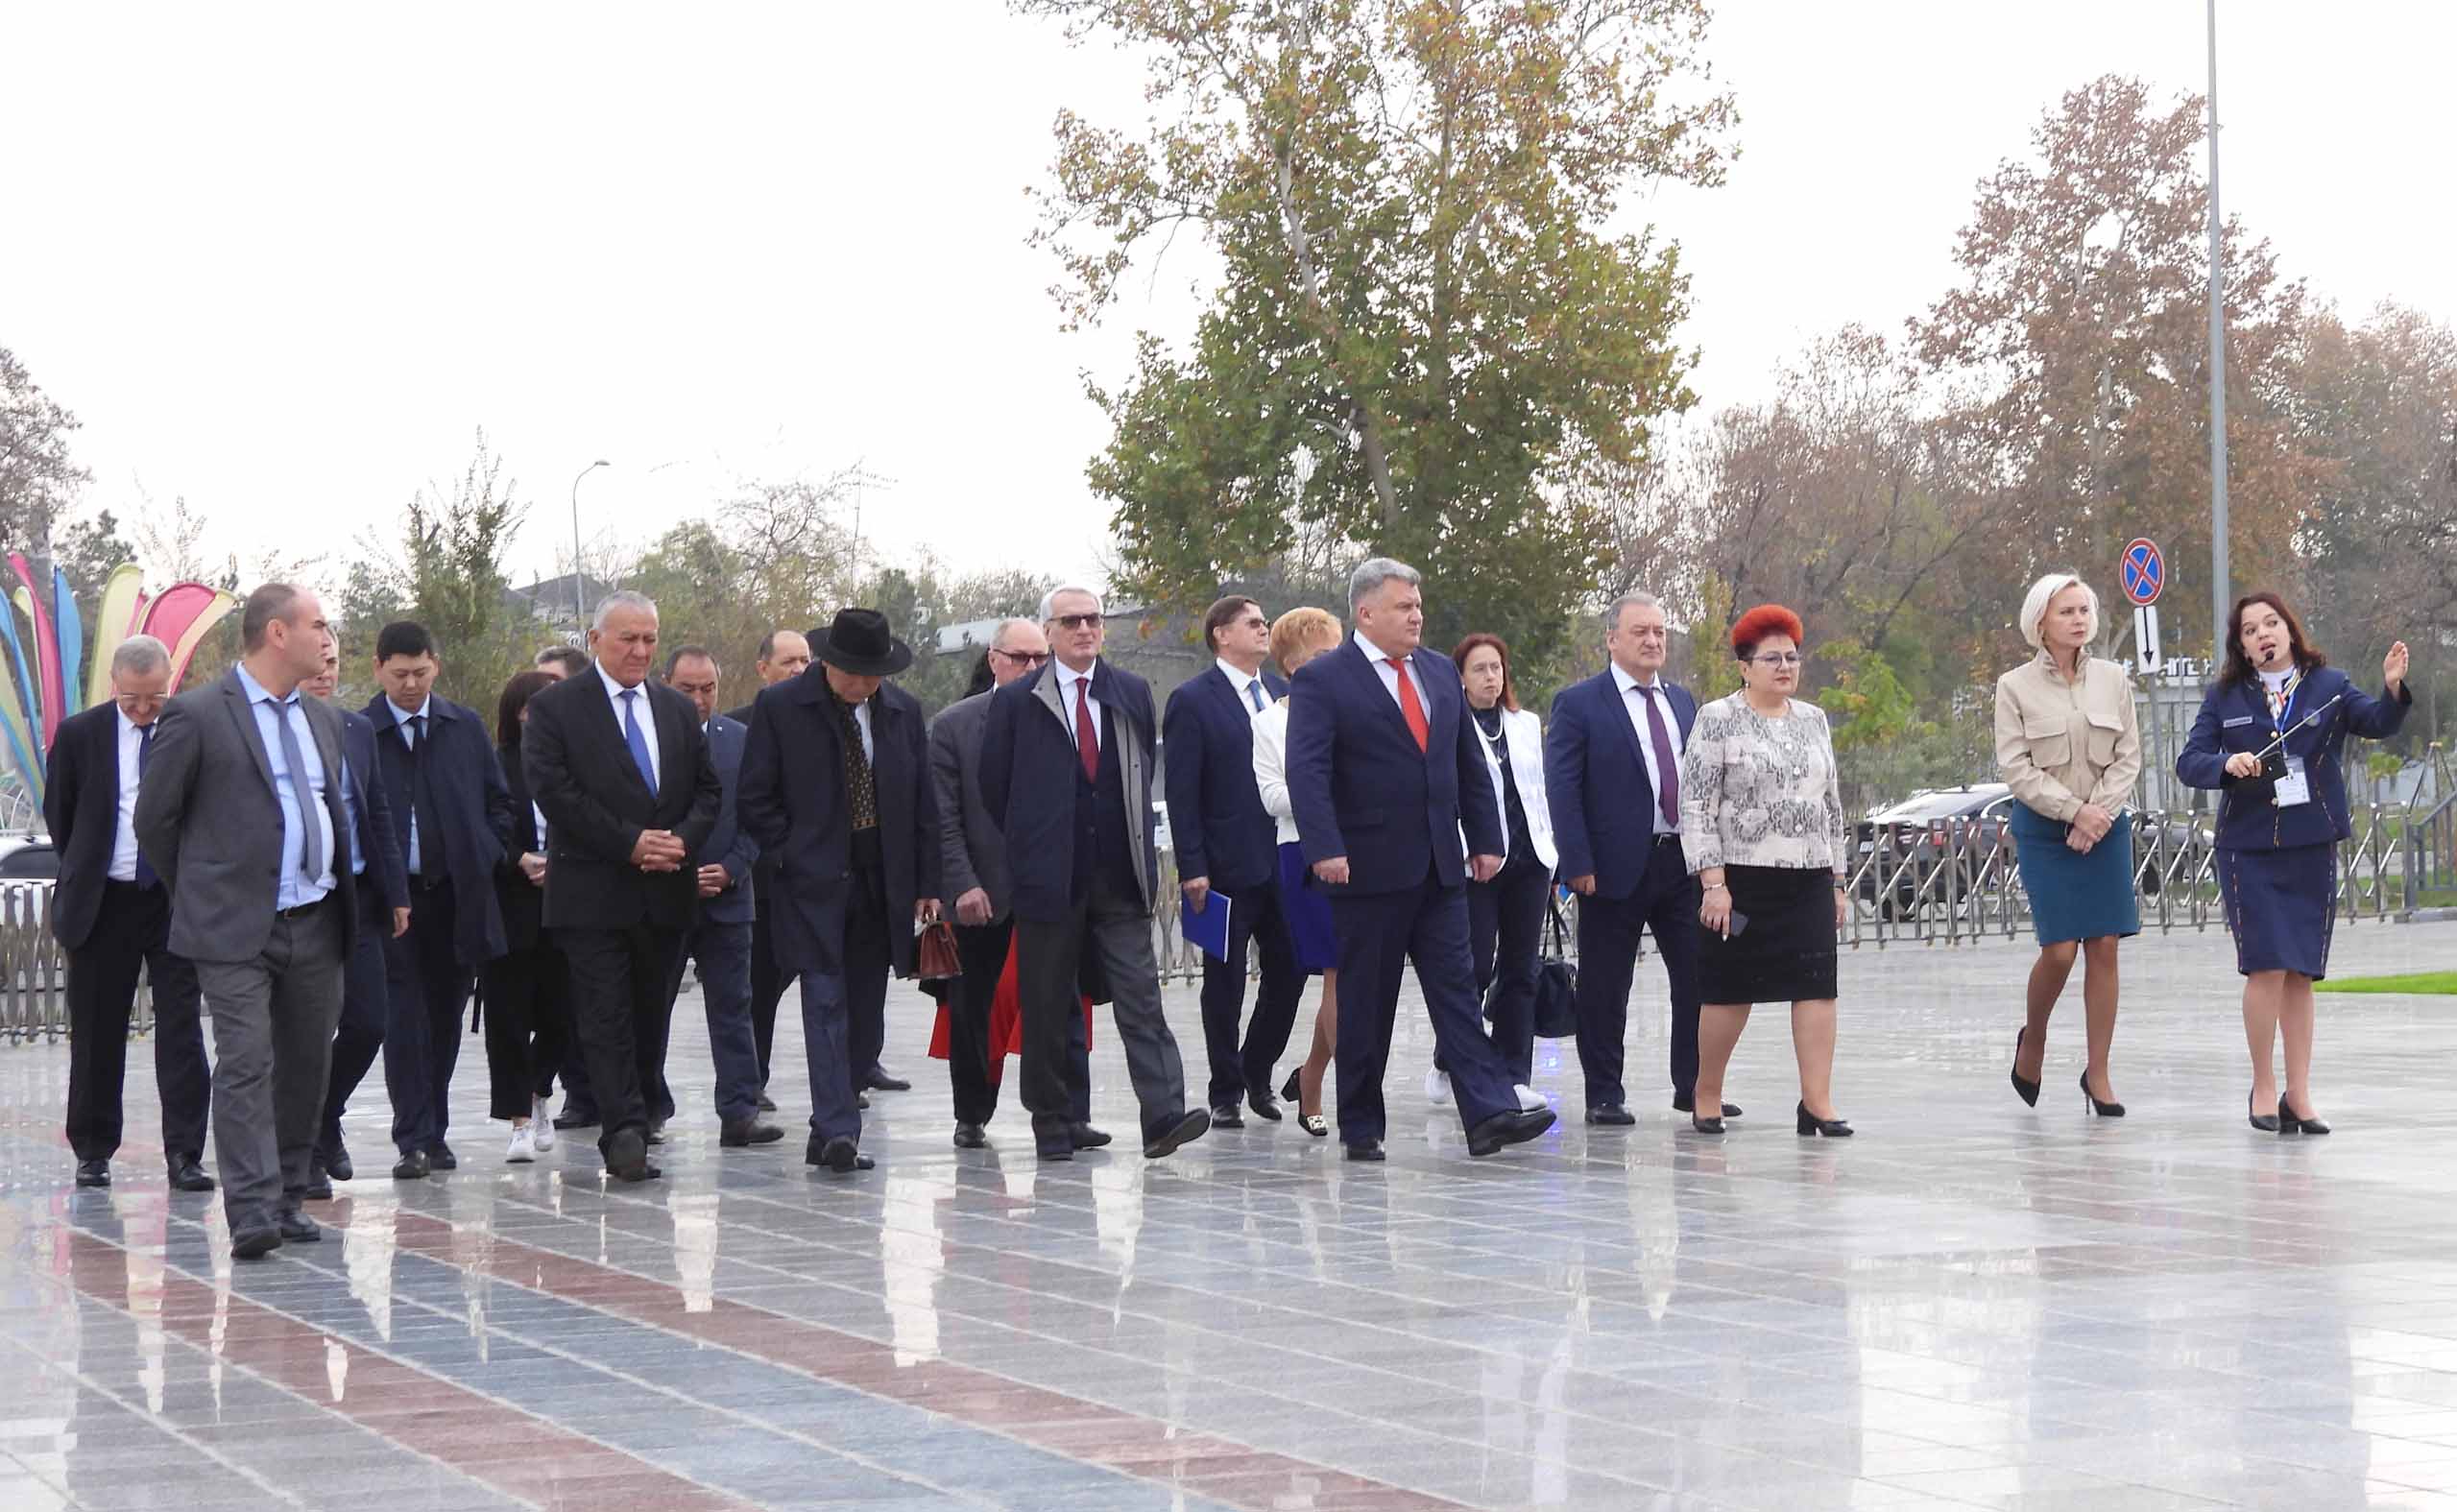 Руководители профсоюзных организаций стран Центральной Азии посетили «Парк Победы».